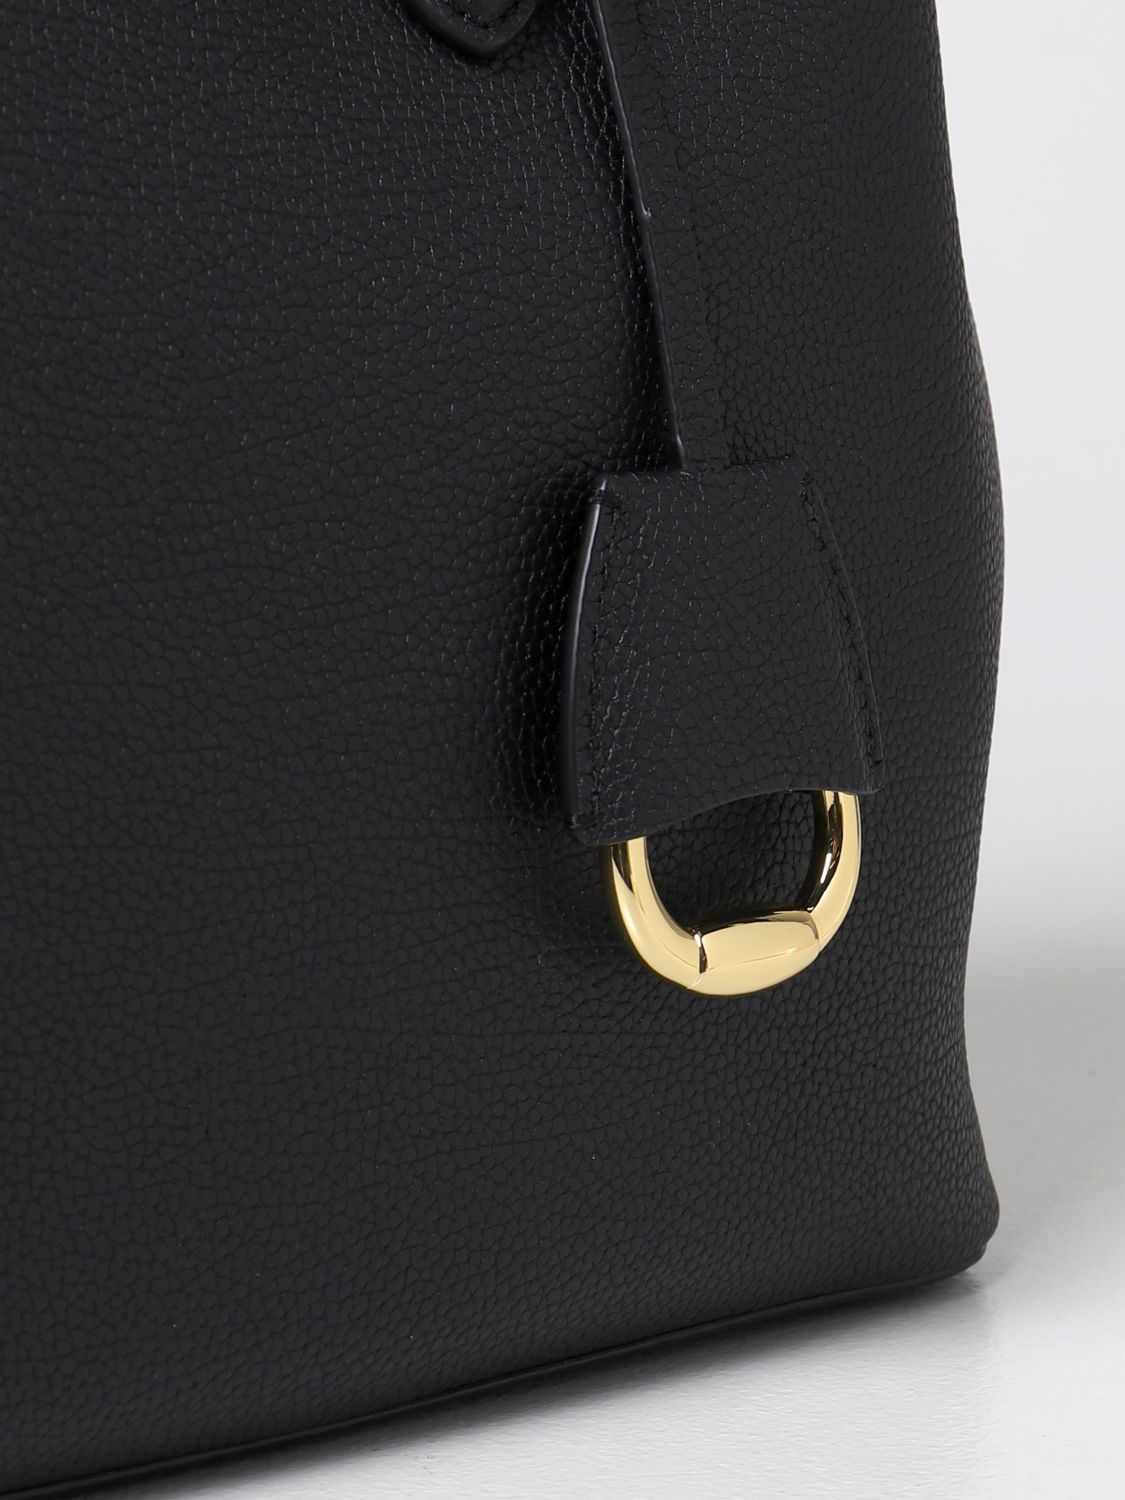 LAUREN RALPH LAUREN: tote bag in grained leather - Leather  Lauren Ralph  Lauren tote bags 431752879 online at